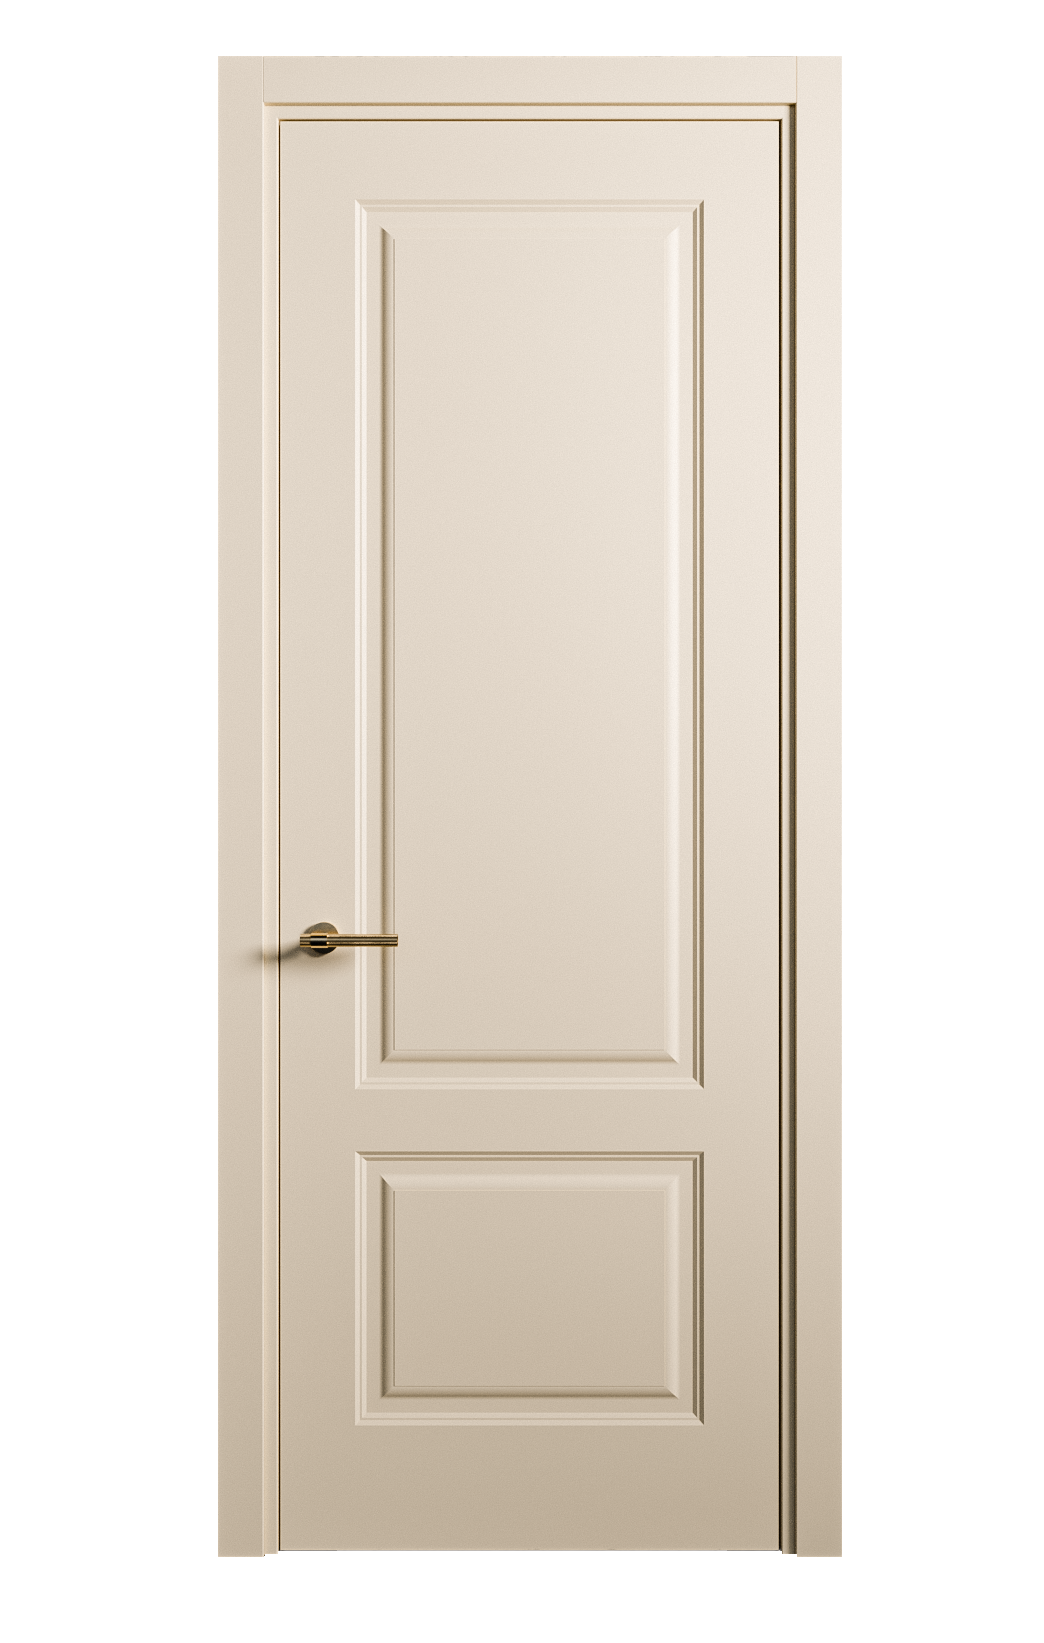 Межкомнатная дверь Вита-1 глухая эмаль ral 1015 26233